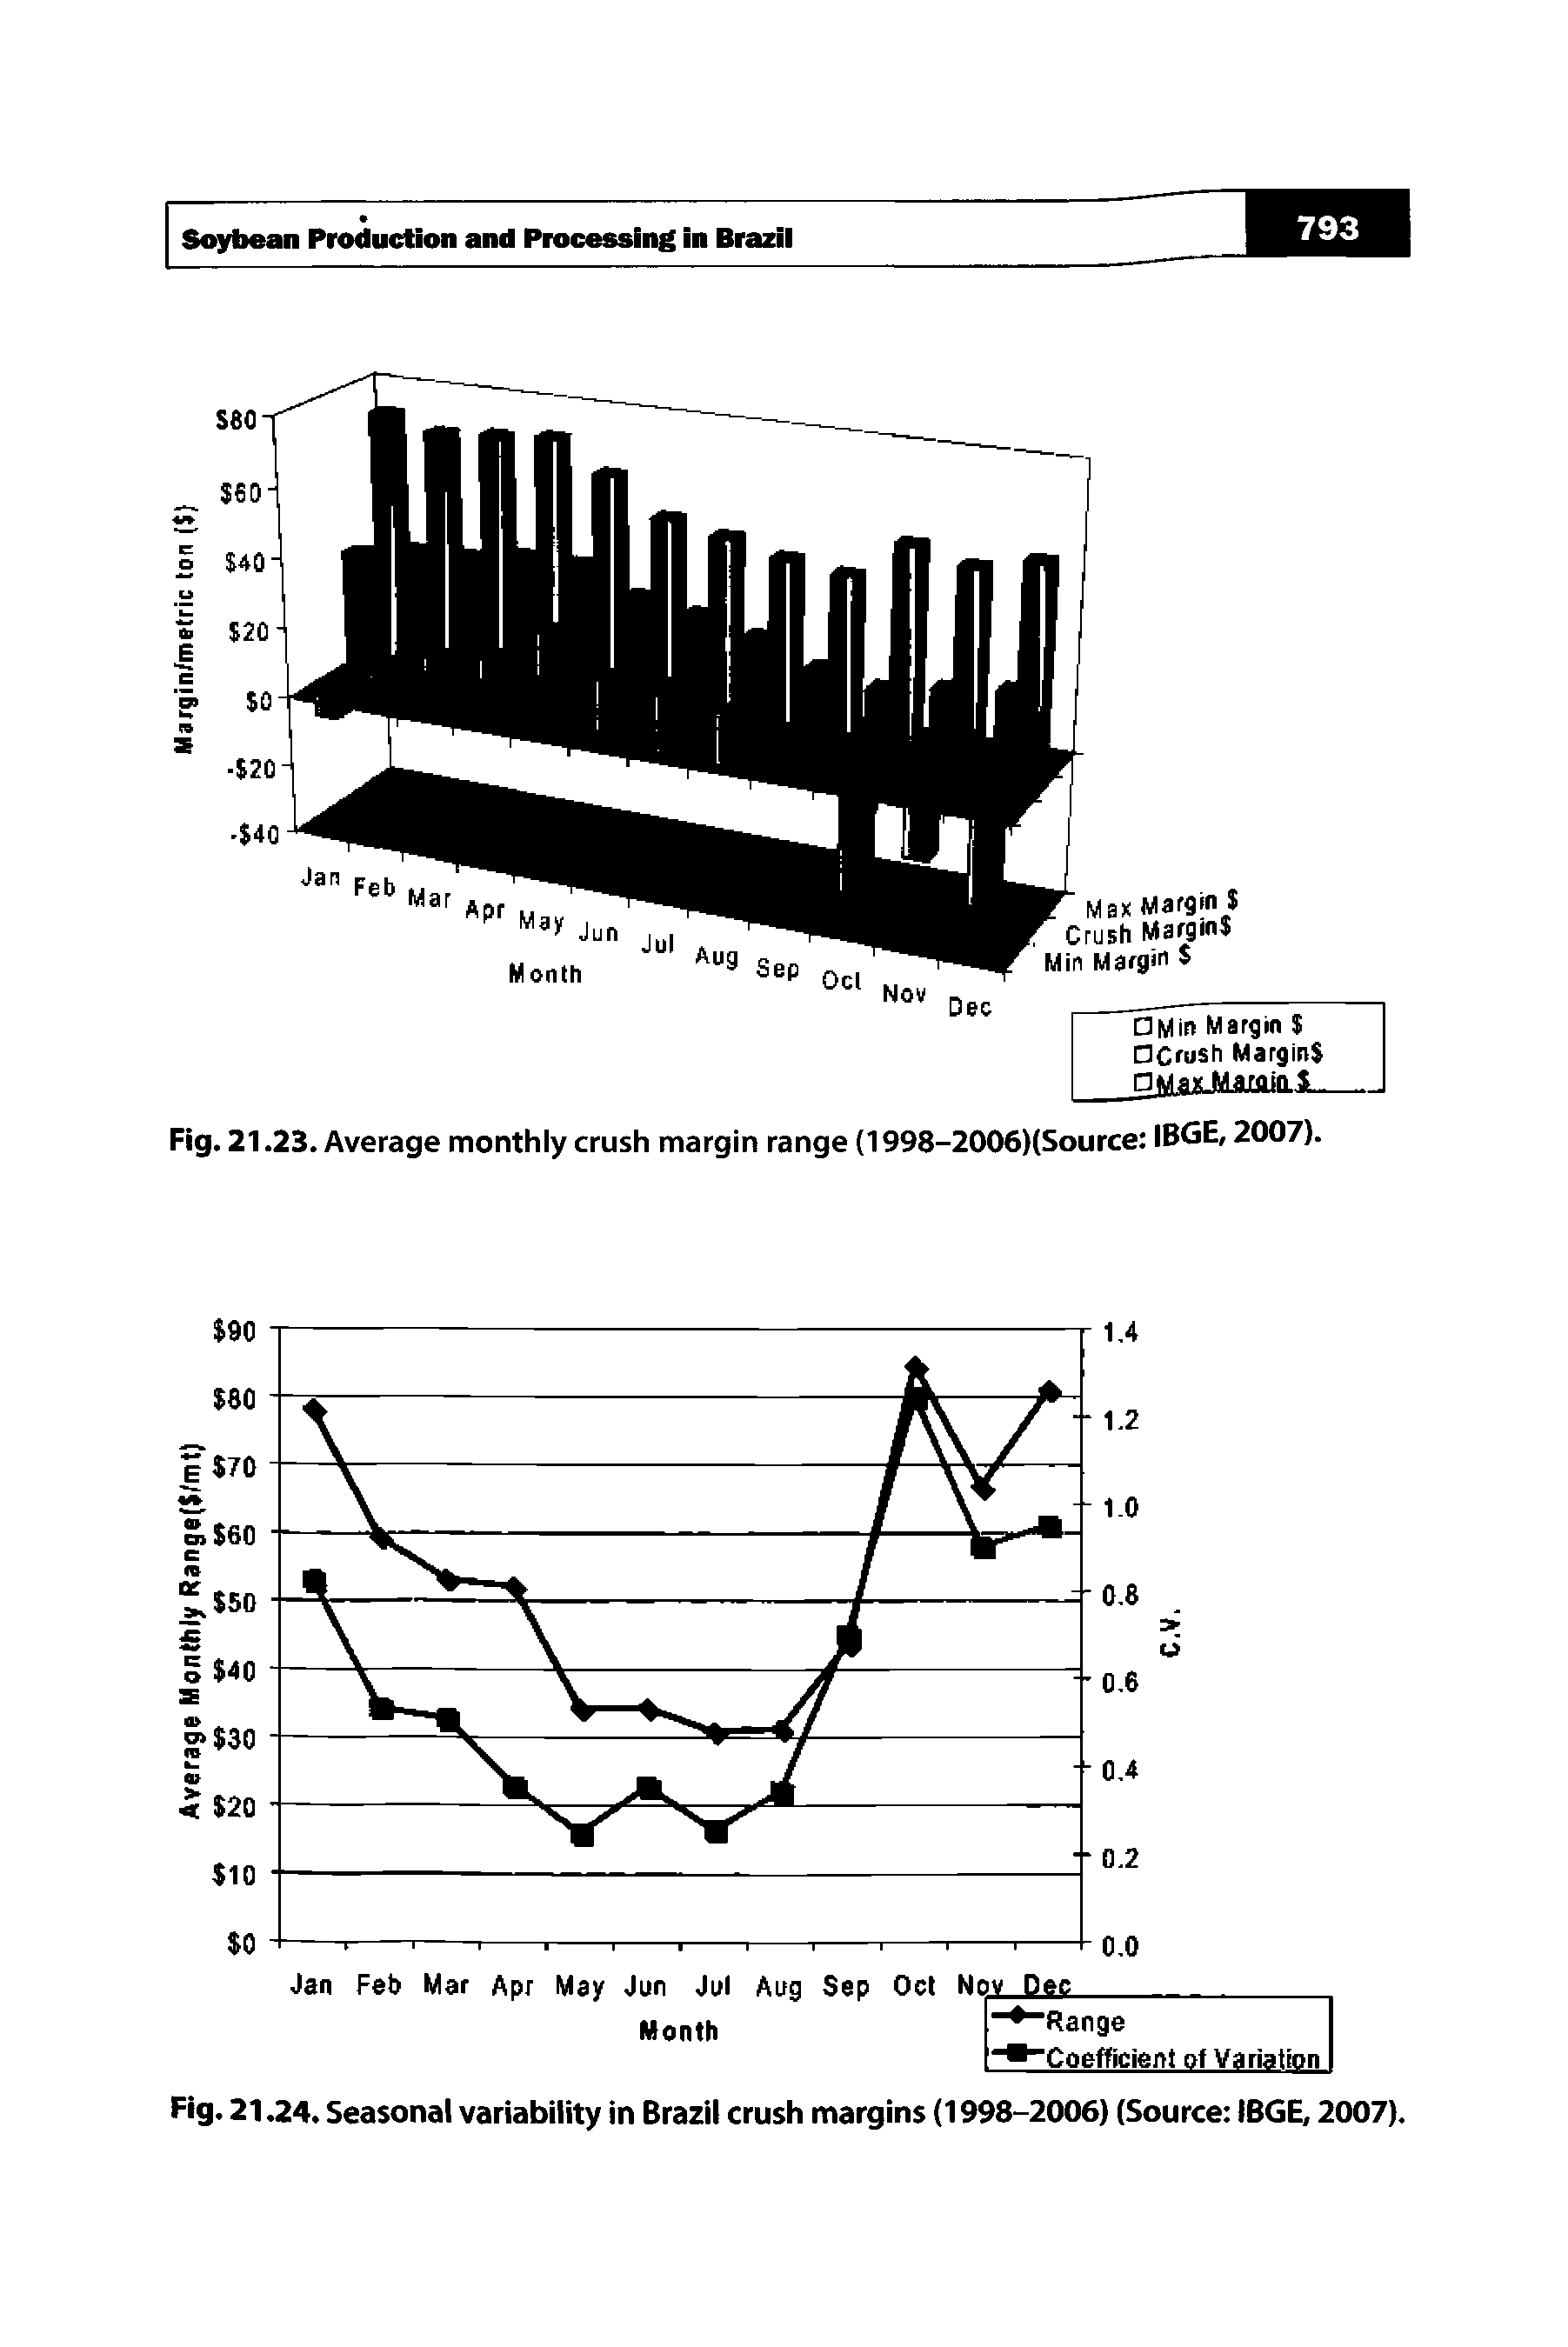 Fig. 21.23. Average monthly crush margin range (1998-2006)(Source IBGE, 2007).